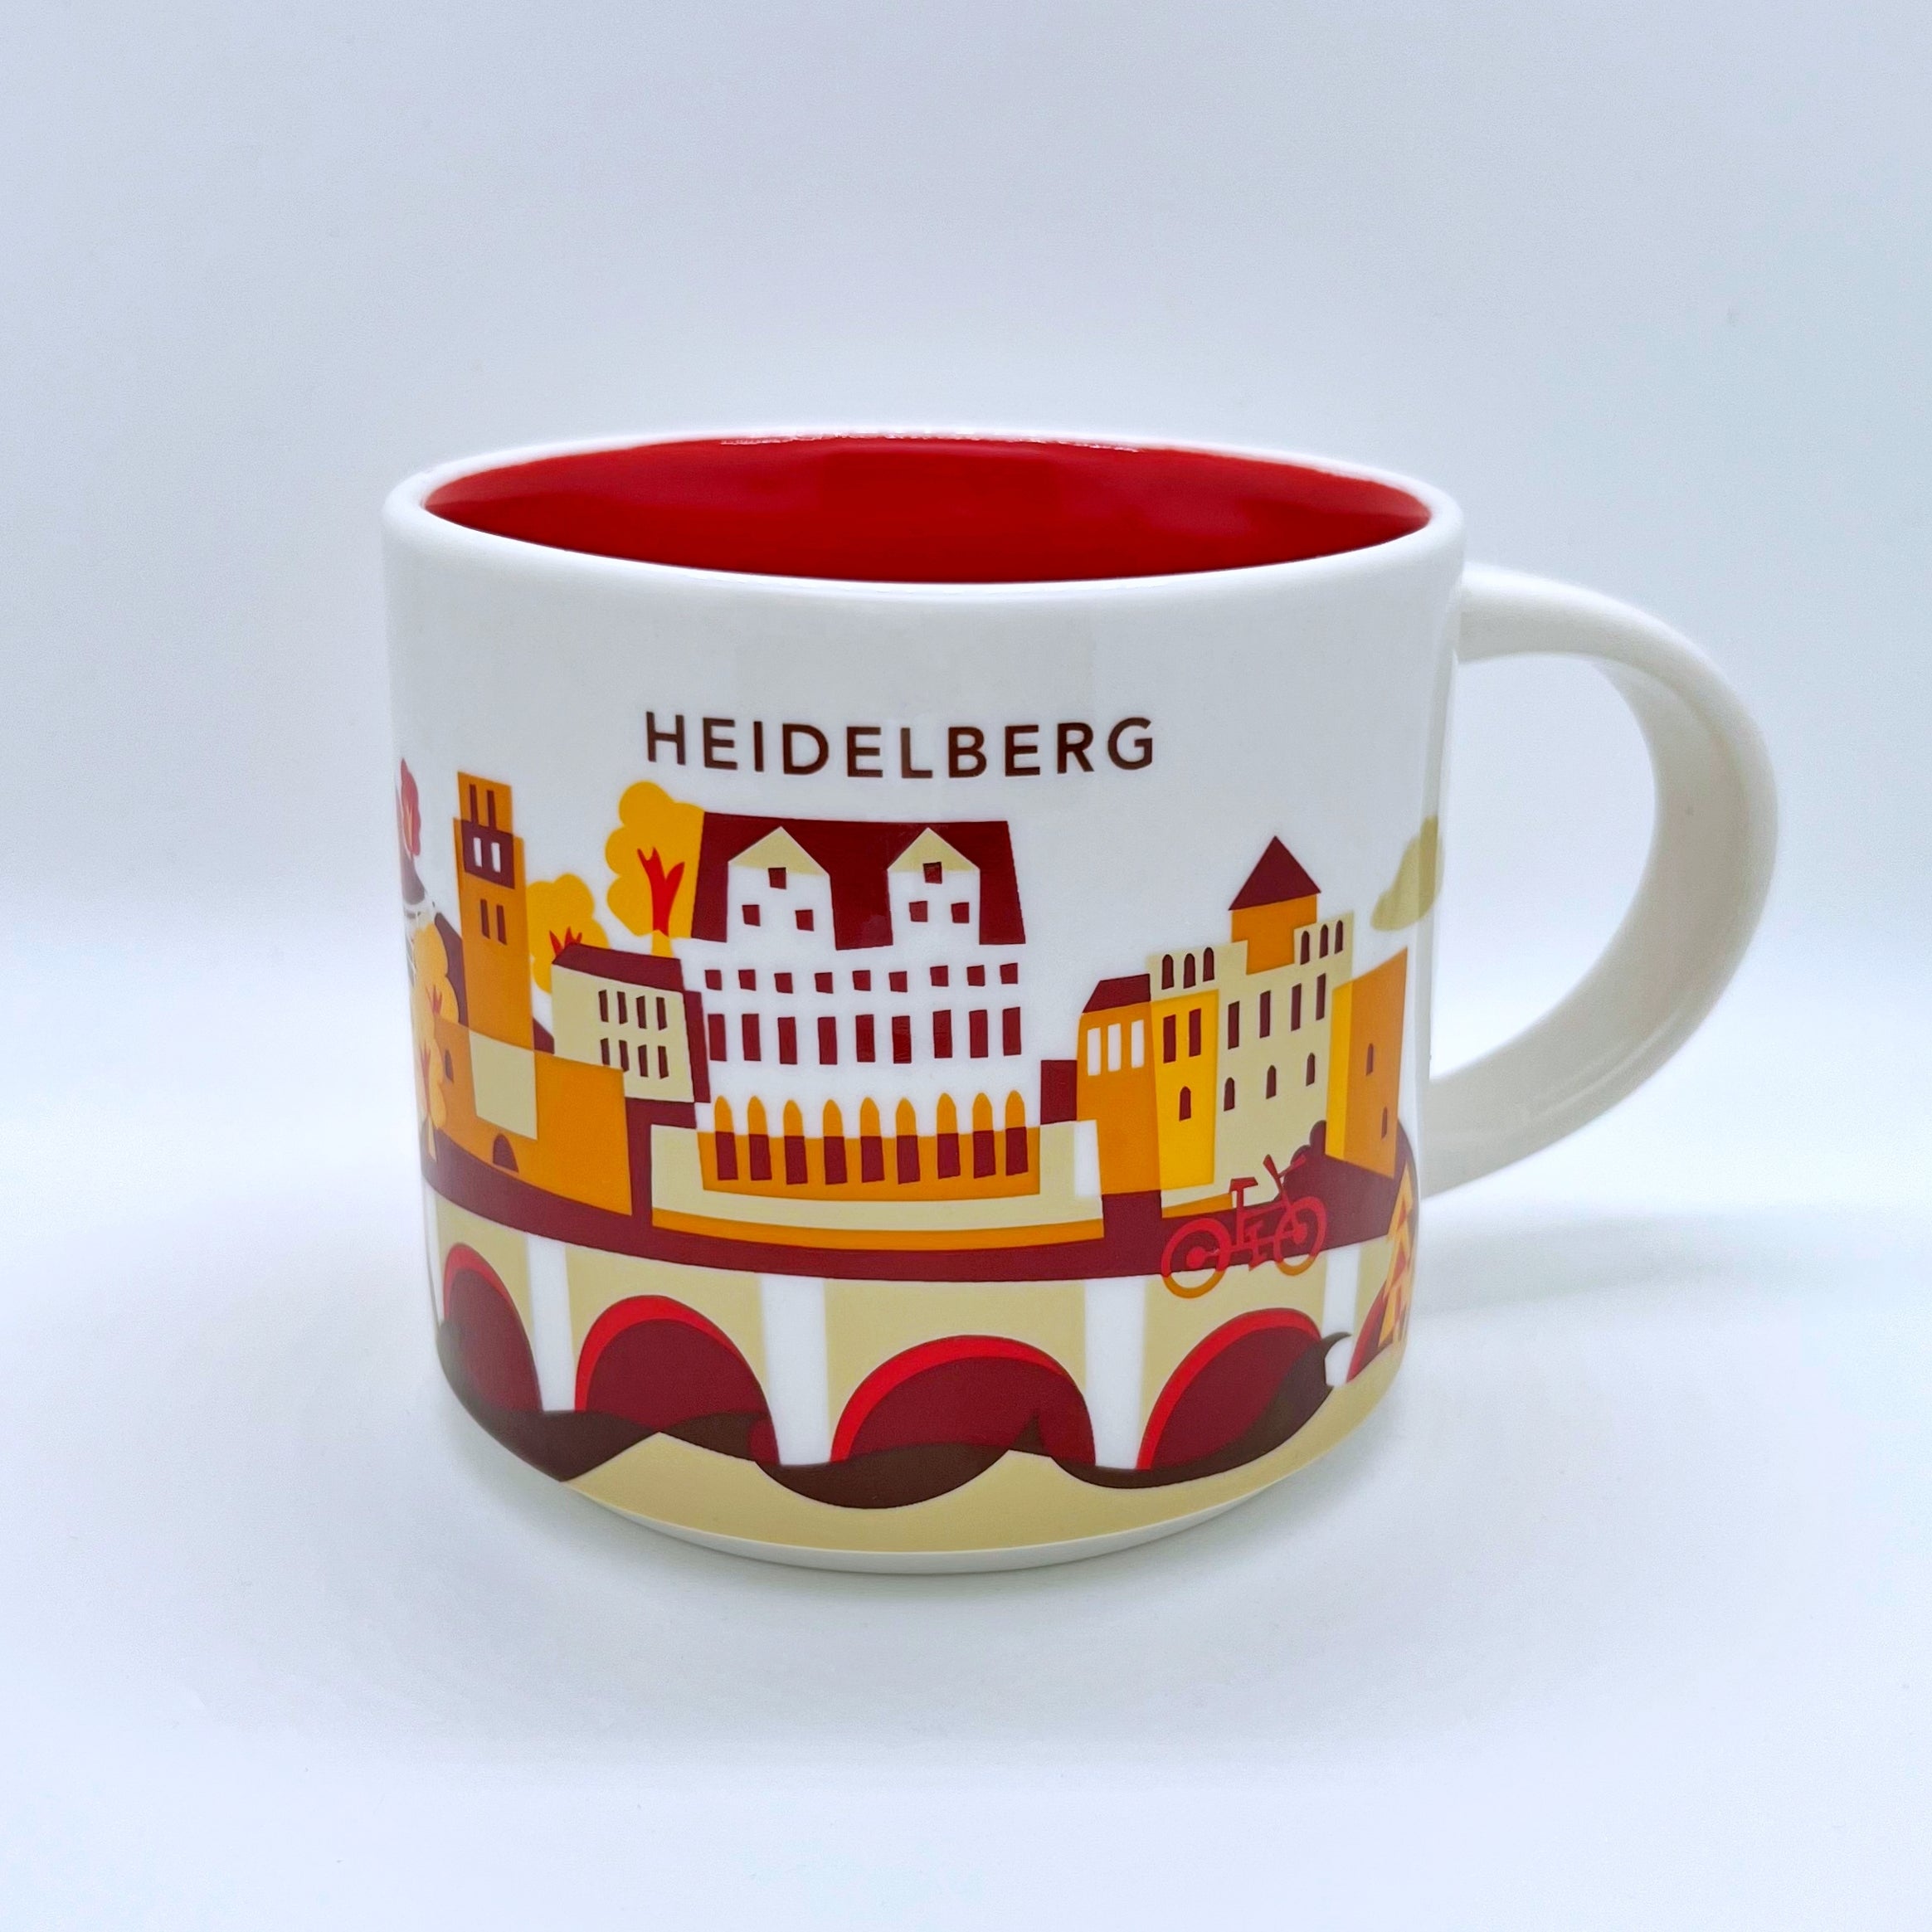 Kaffee Tee und Cappuccino Tasse von Starbucks mit gemalten Bildern aus der Stadt Heidelberg